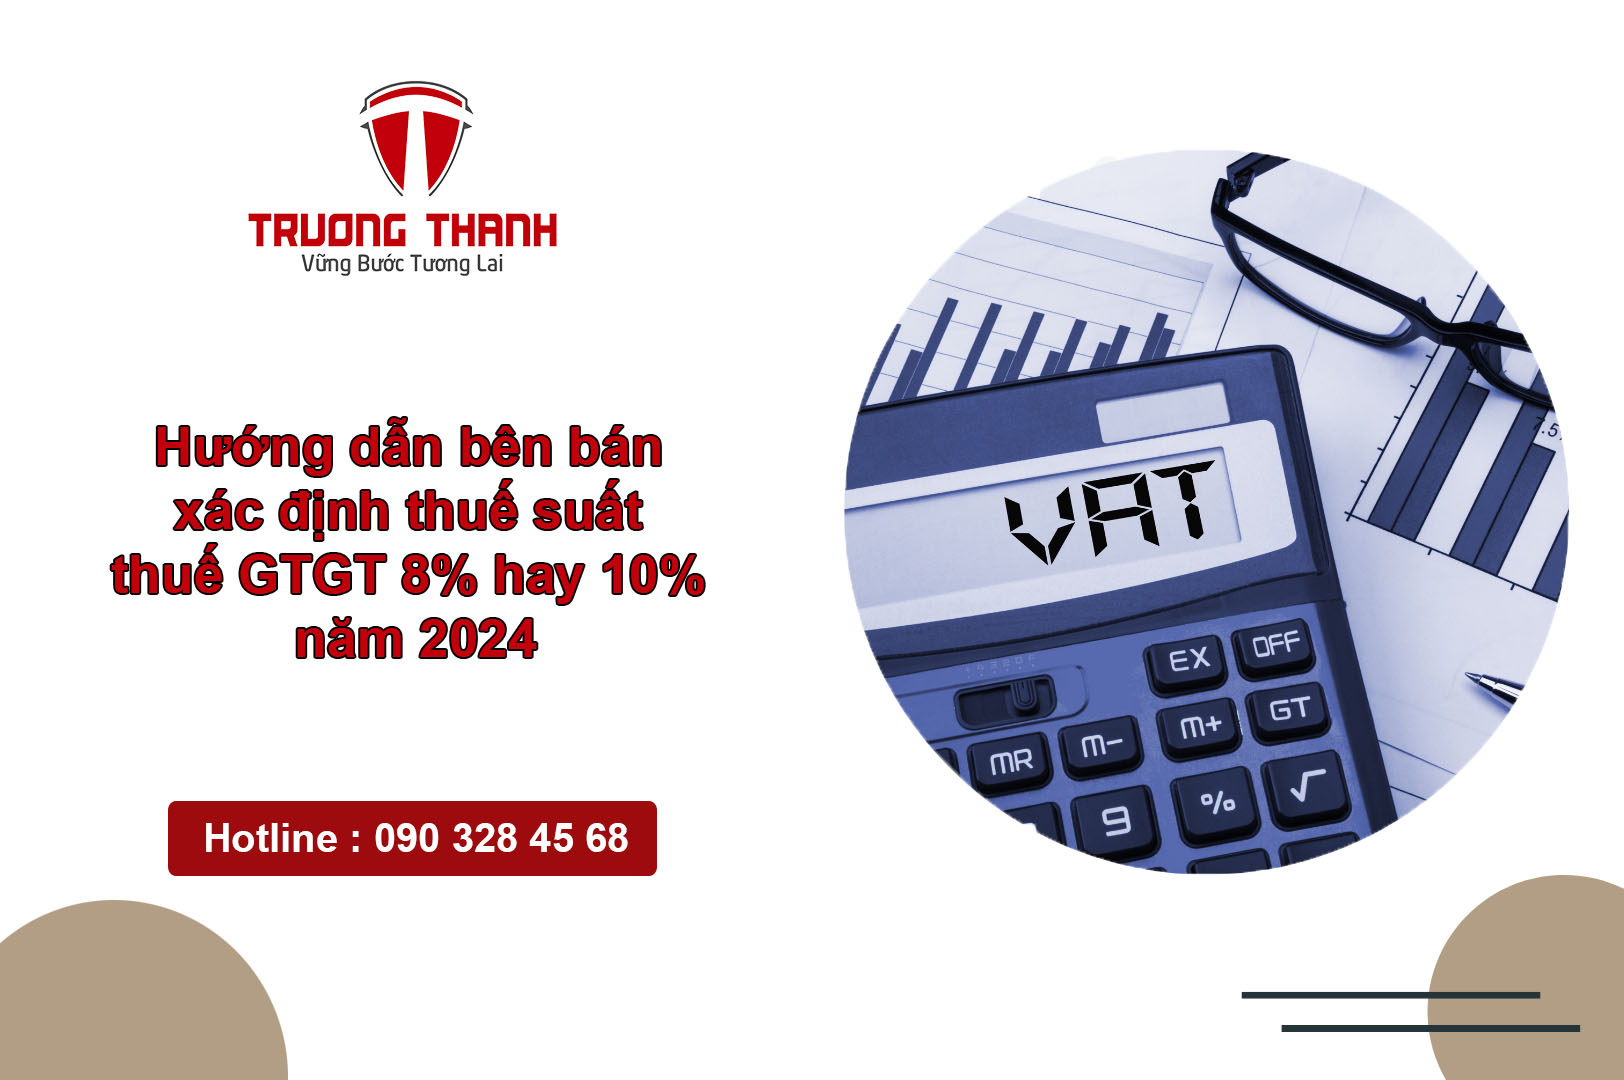 Hướng dẫn bên bán xác định thuế suất thuế GTGT 8% hay 10% năm 2024